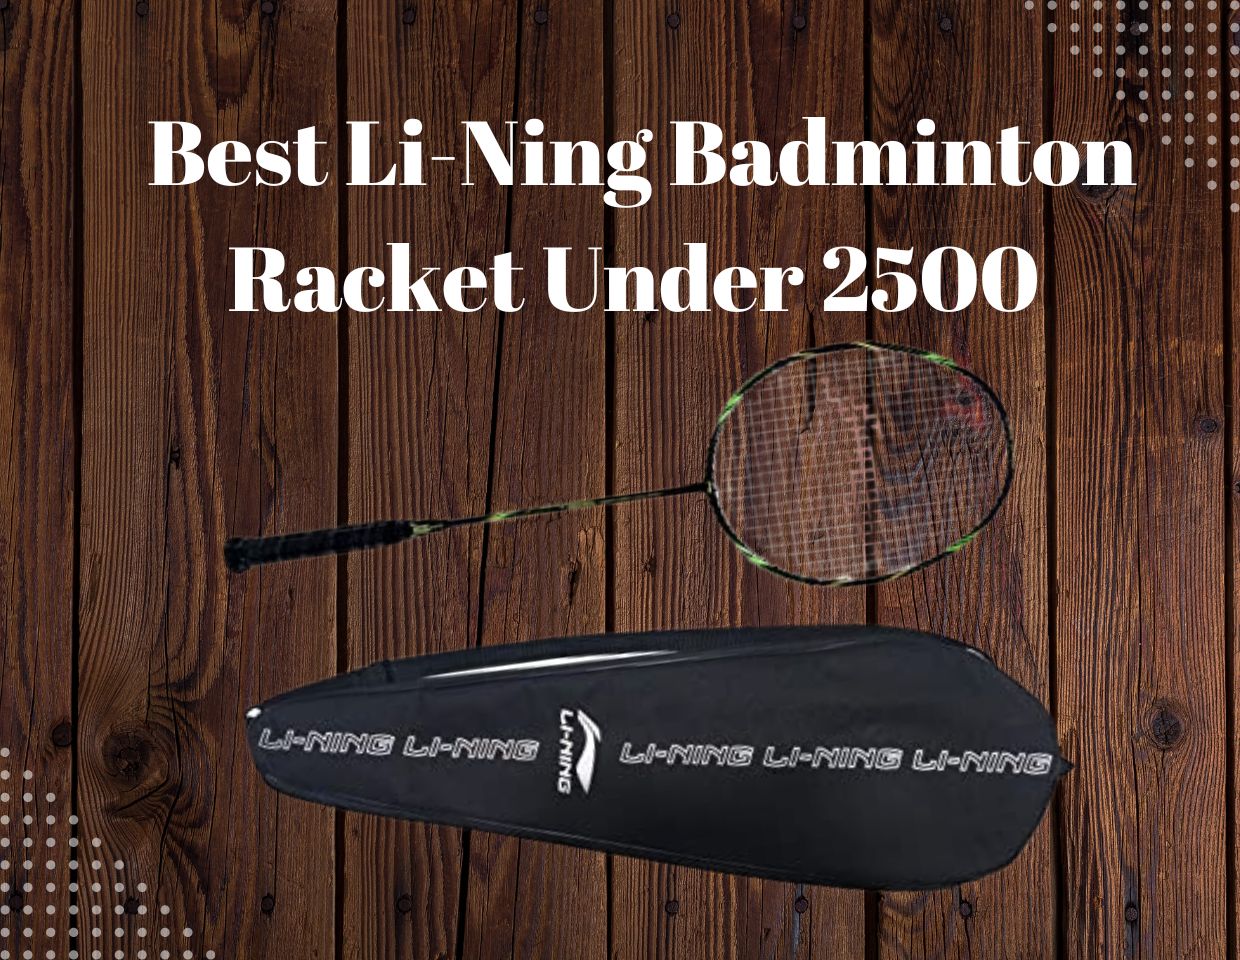 Best-Li-Ning-Badminton-Racket-Under-2500-Reviews